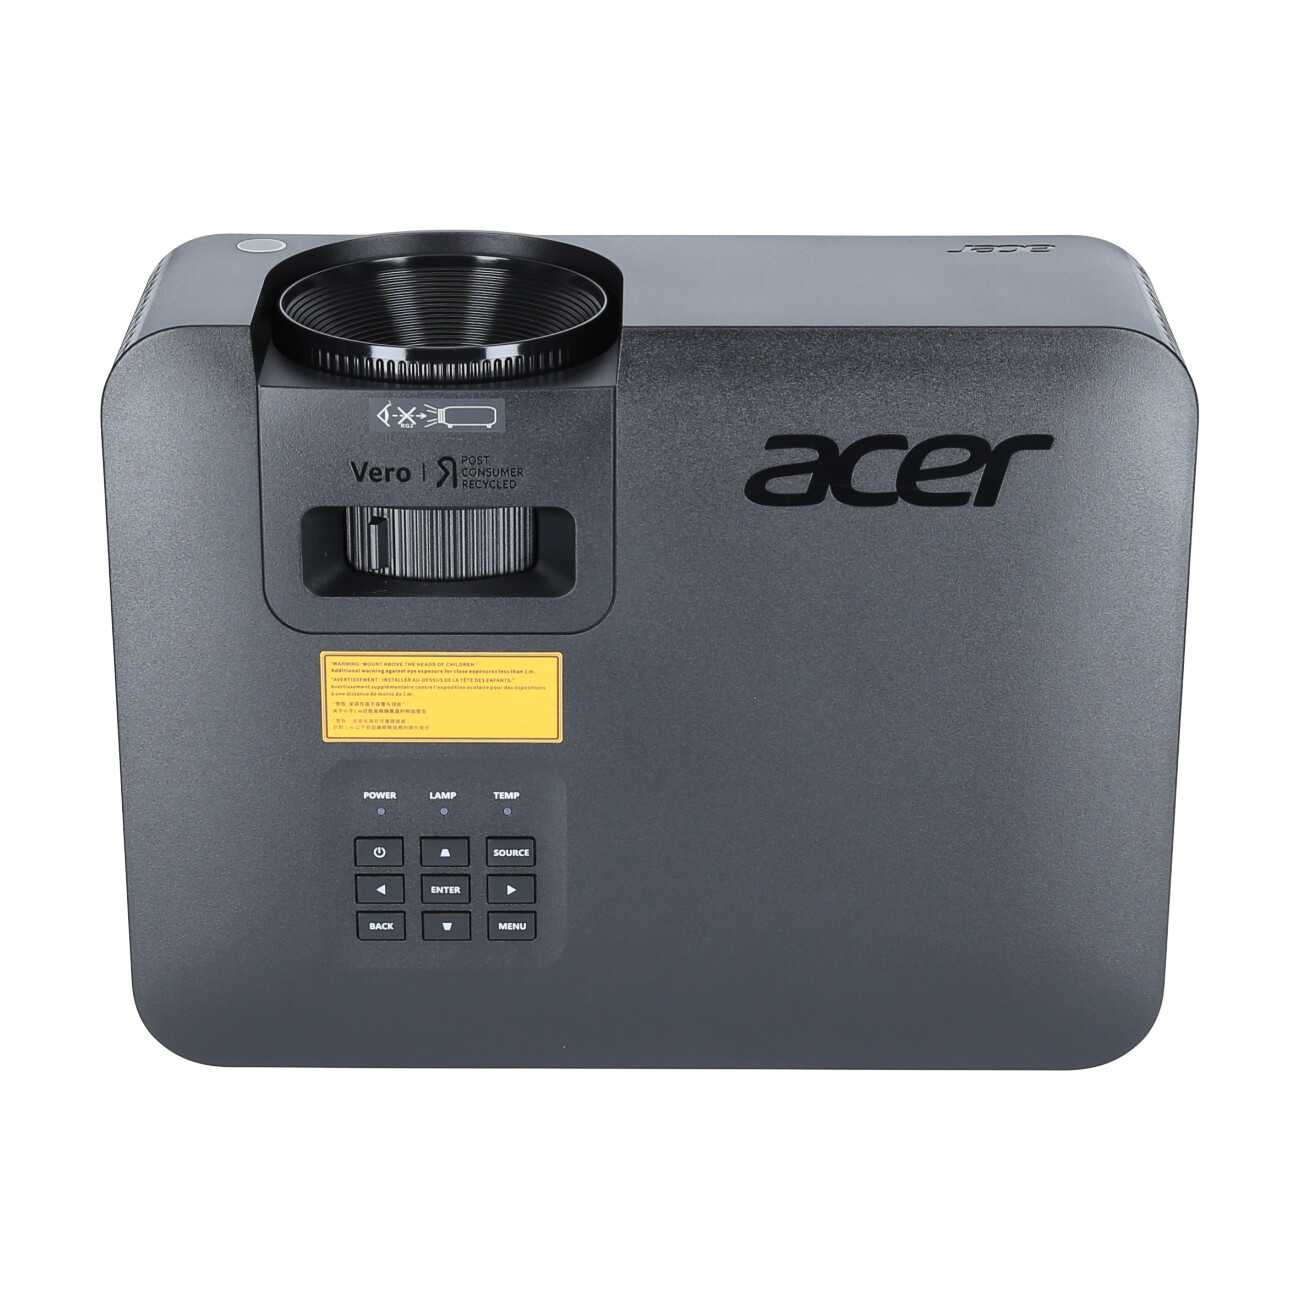 Acer-Vero-XL2220